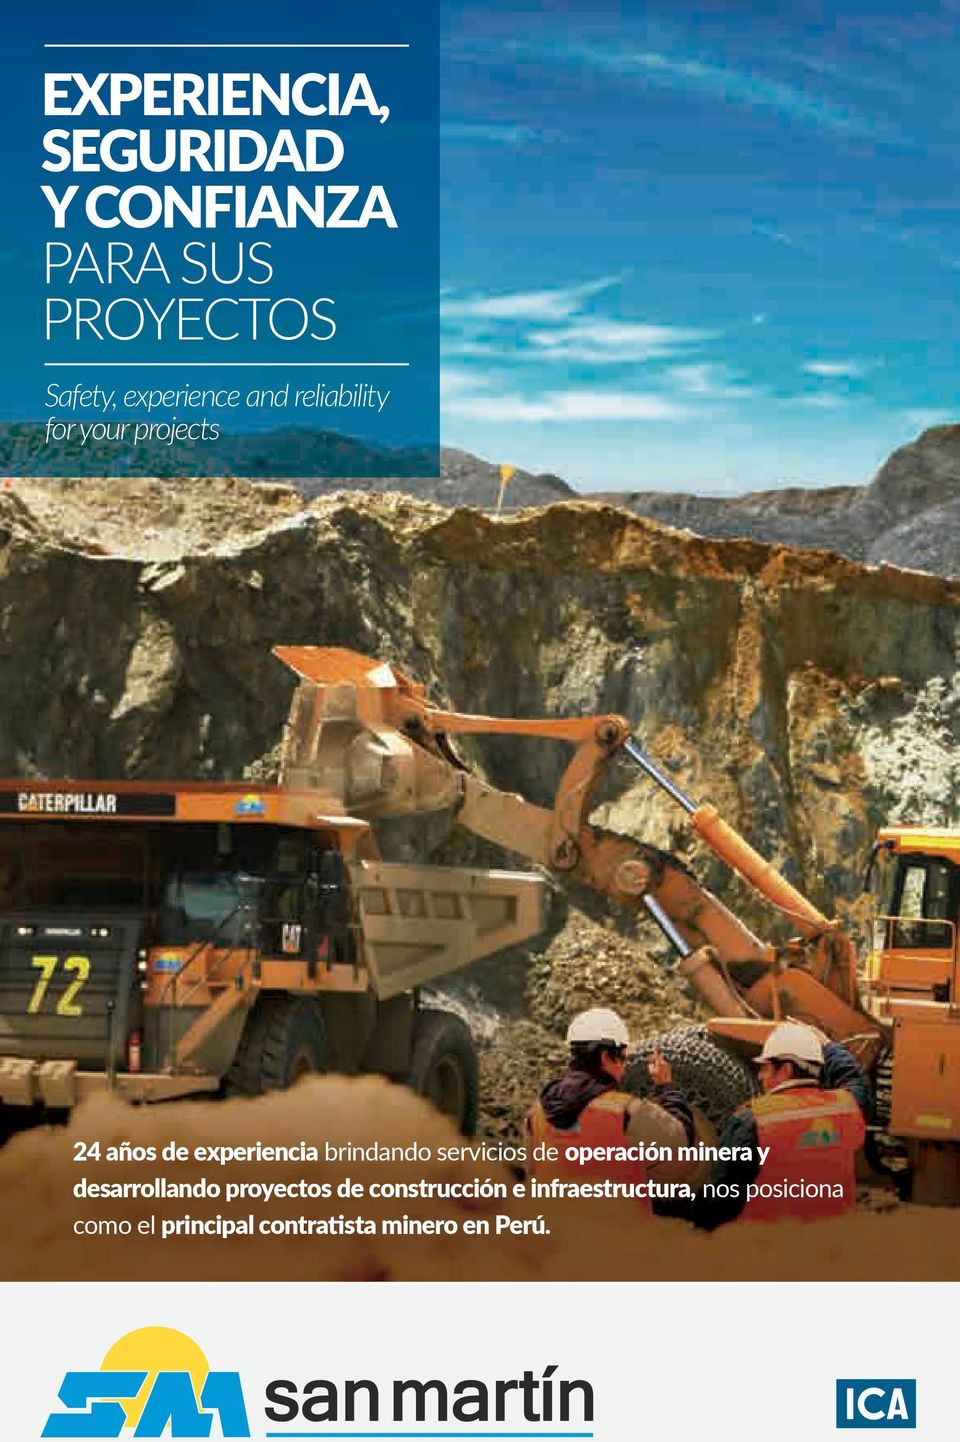 servicios de operación minera y desarrollando proyectos de construcción